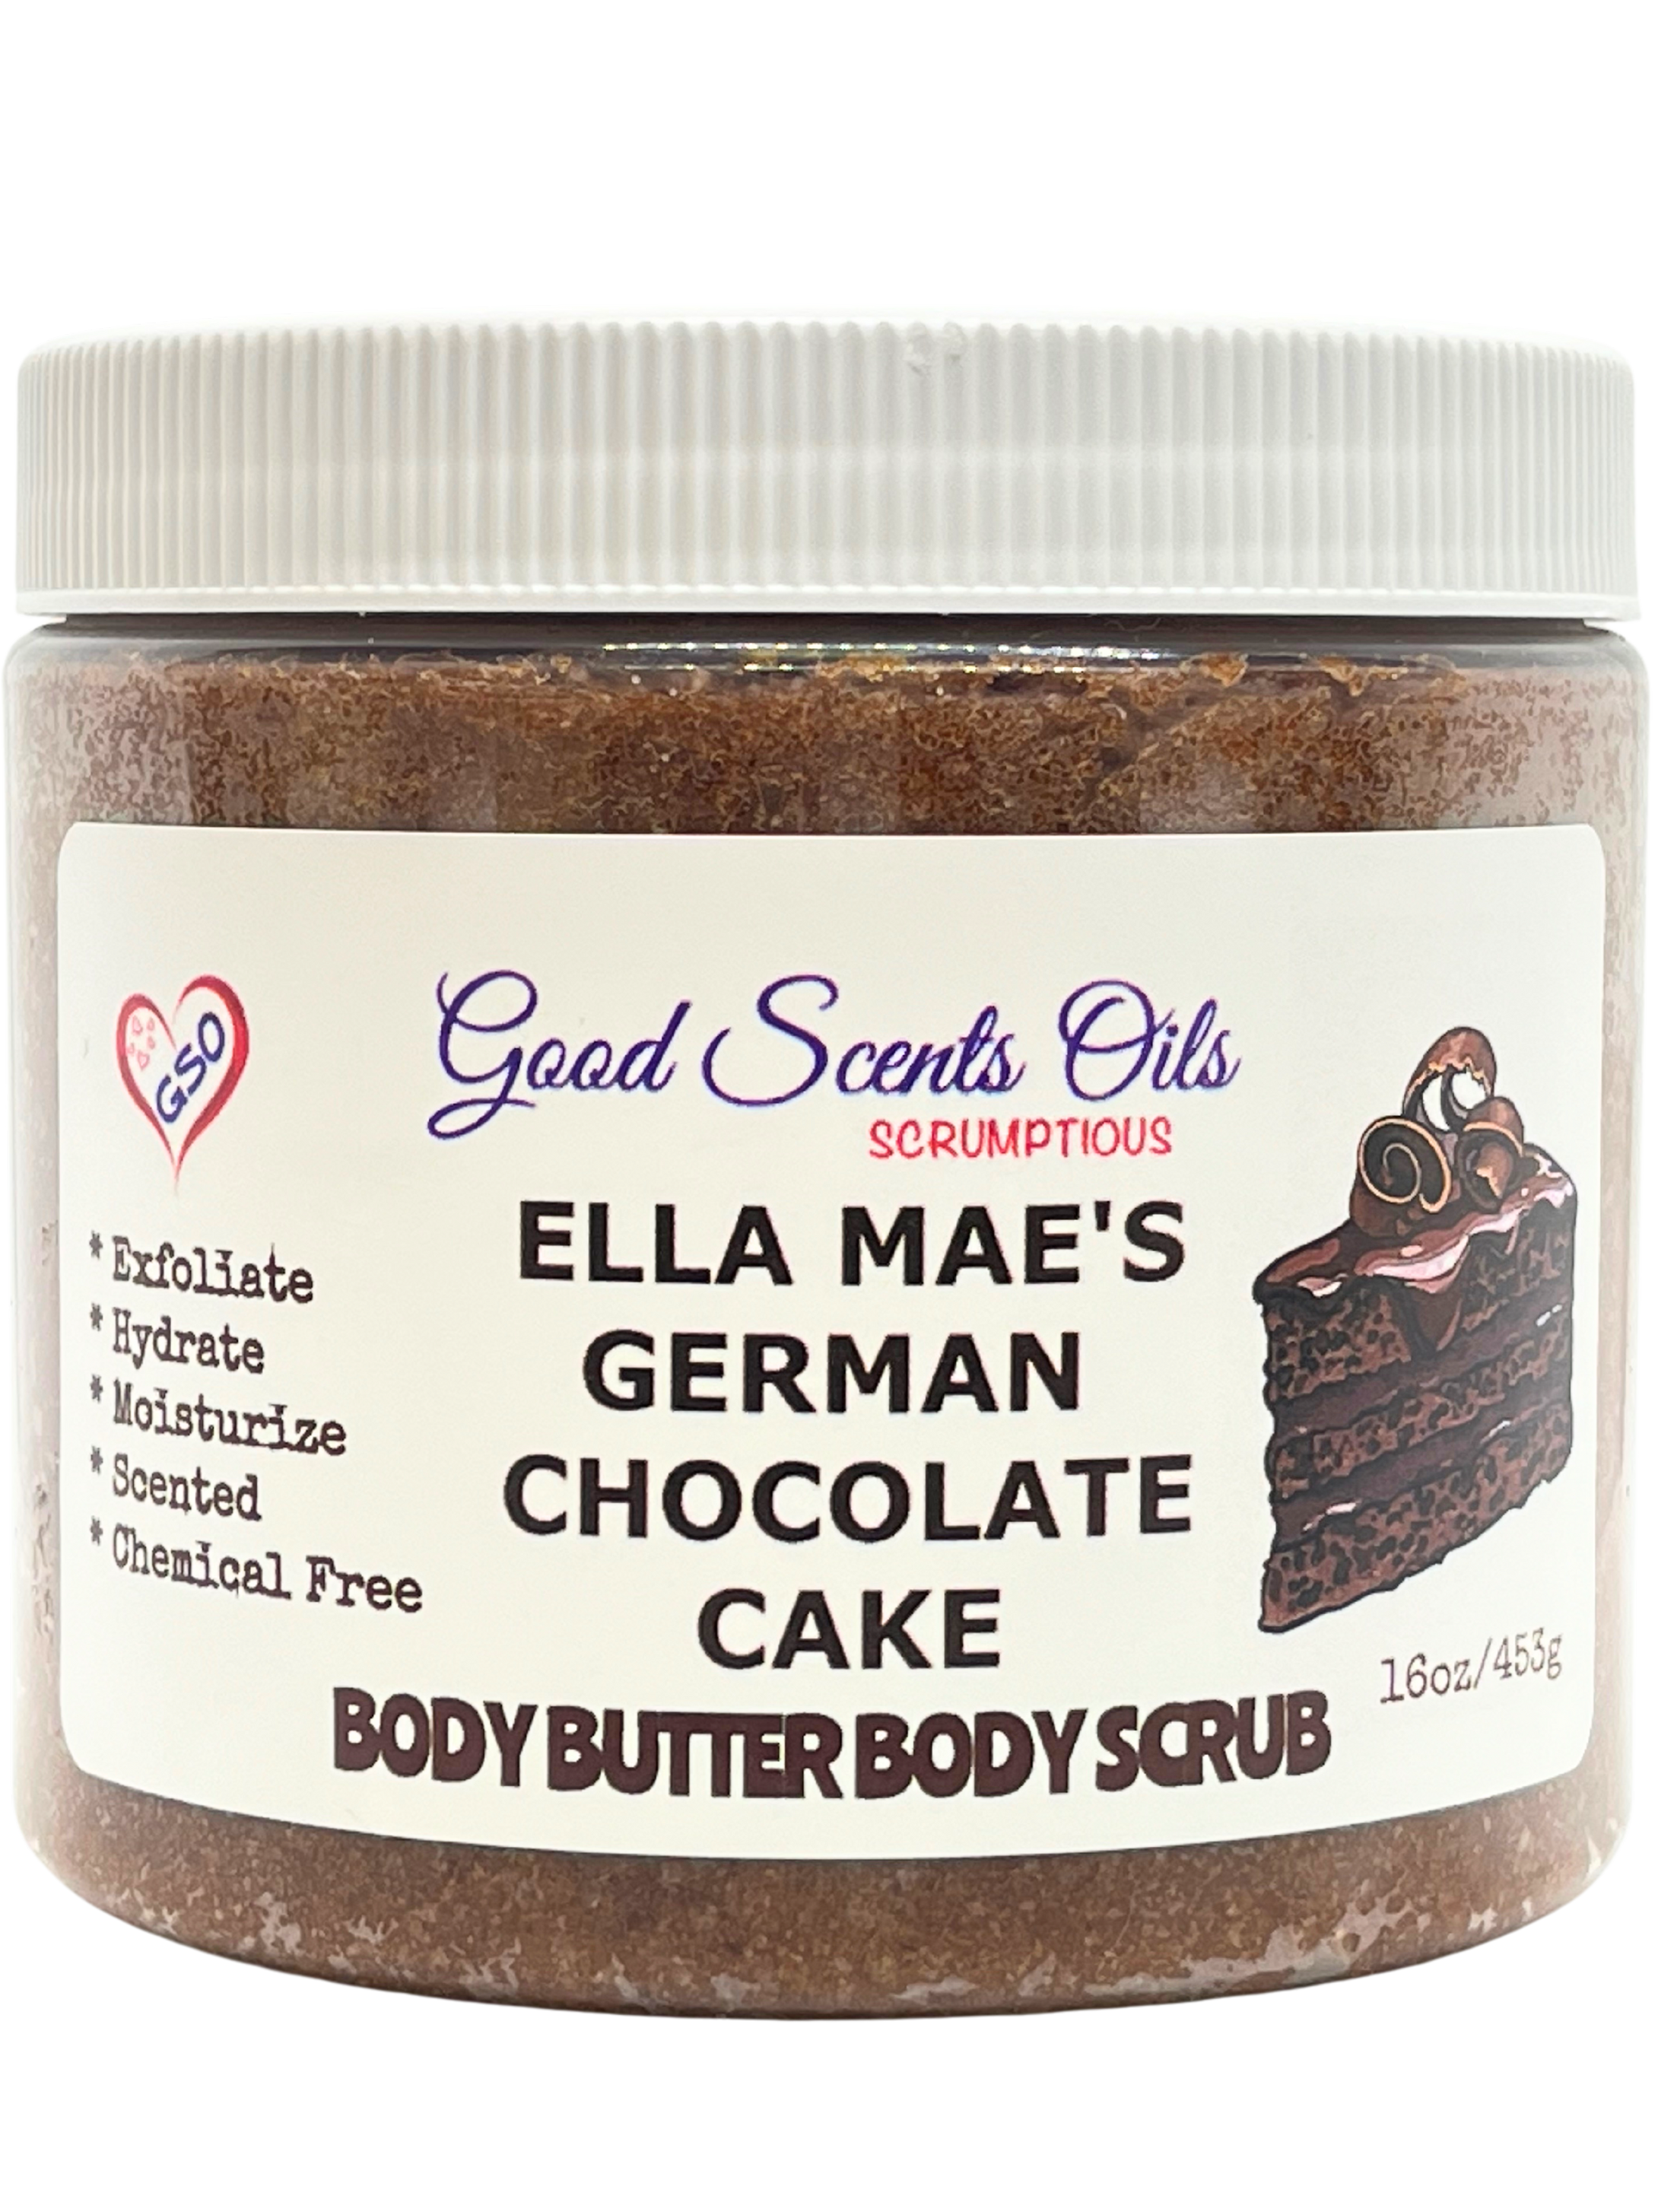 ELLA MAE’S GERMAN CHOCOLATE CAKE BODY SCRUB 16oz